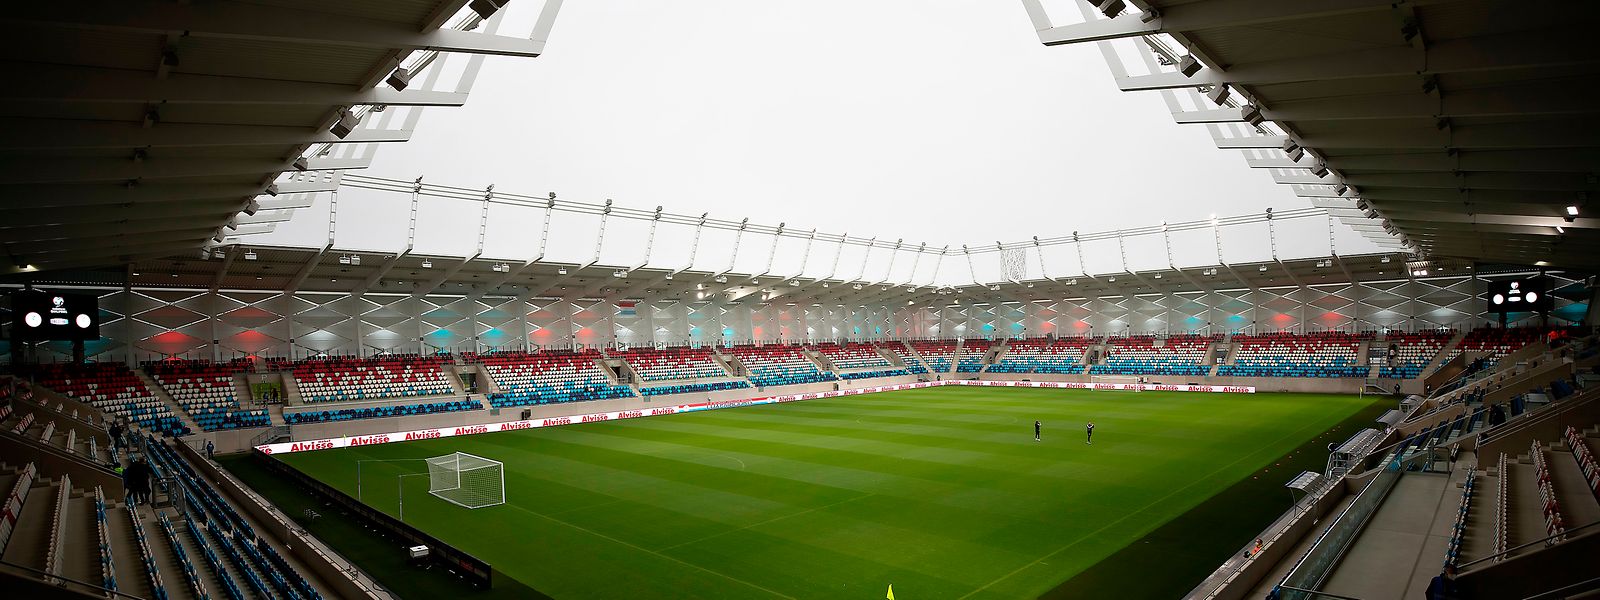 Am Mittwochabend werden insgesamt 2000 Personen im Stade de Luxembourg sein.